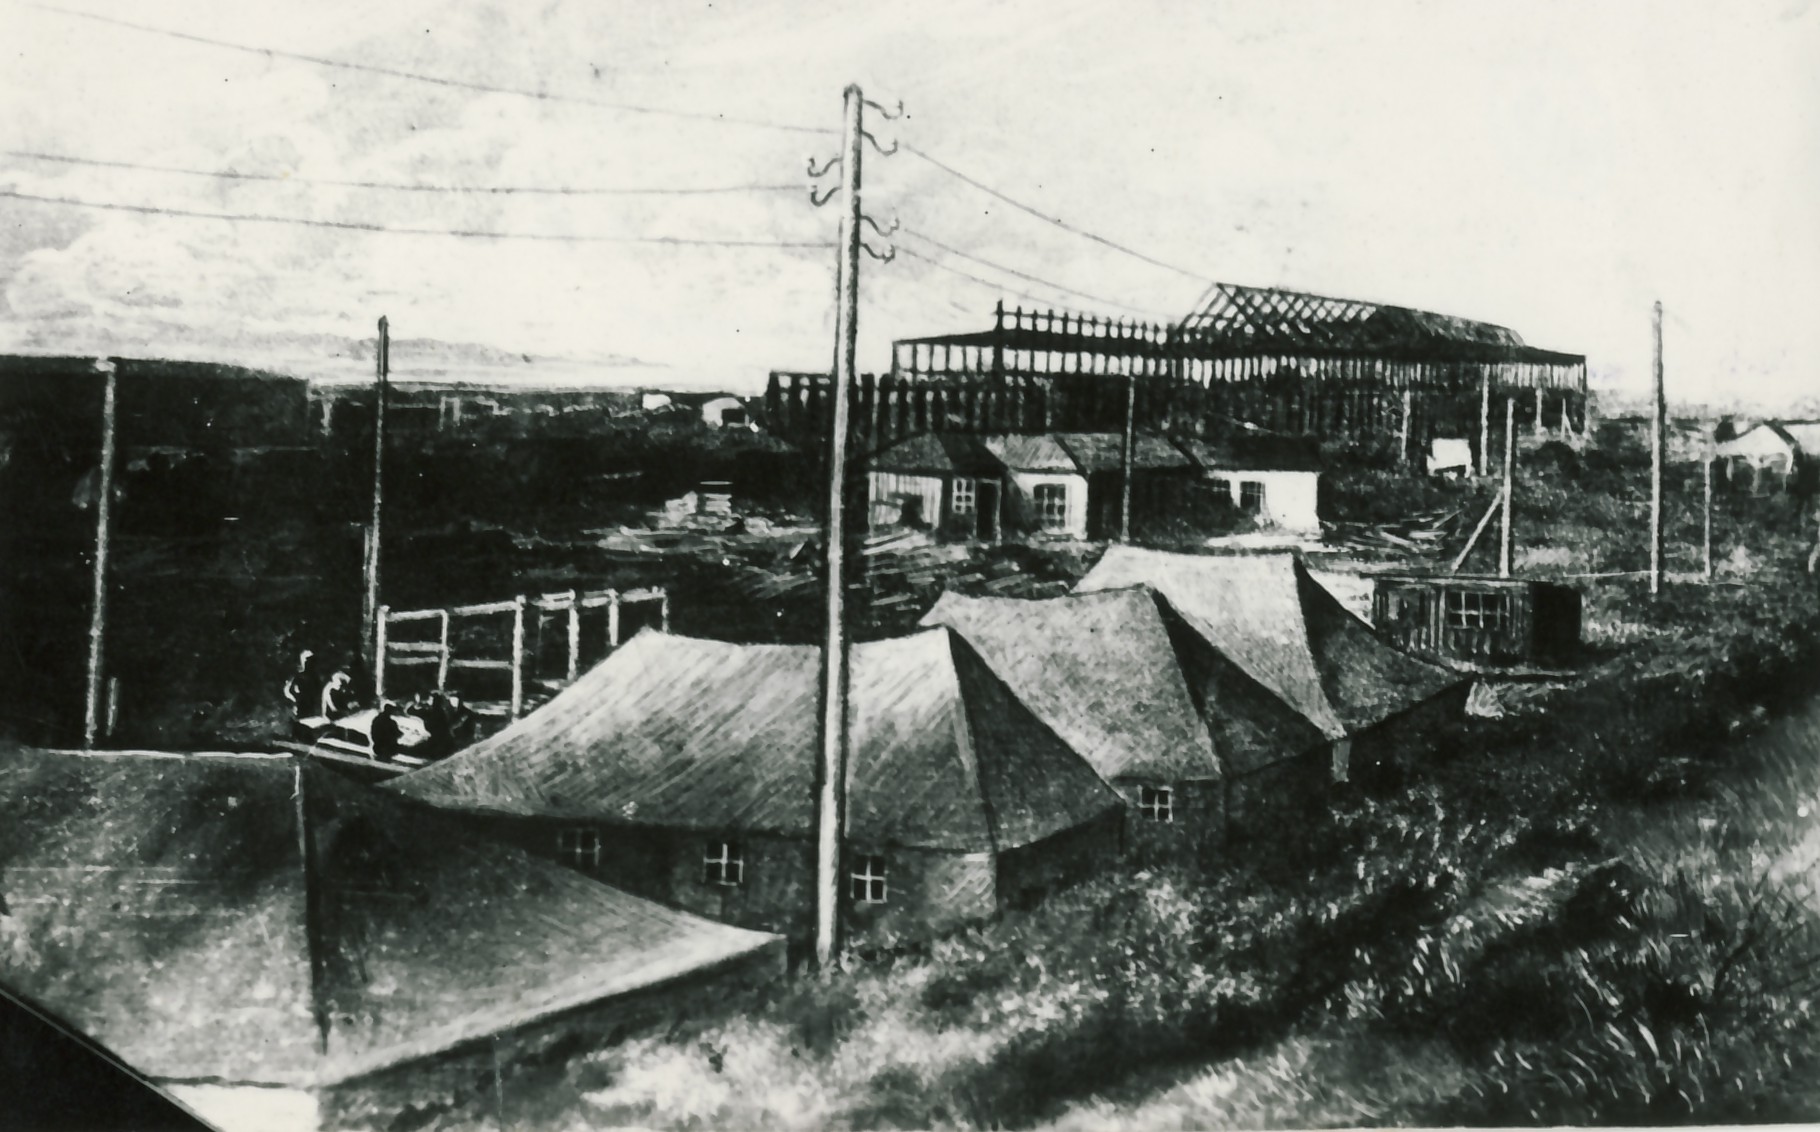 Первый снимок палаточного города Николай Чиж сделал для стенной газеты «Трубопрокатчик» в 1942 году